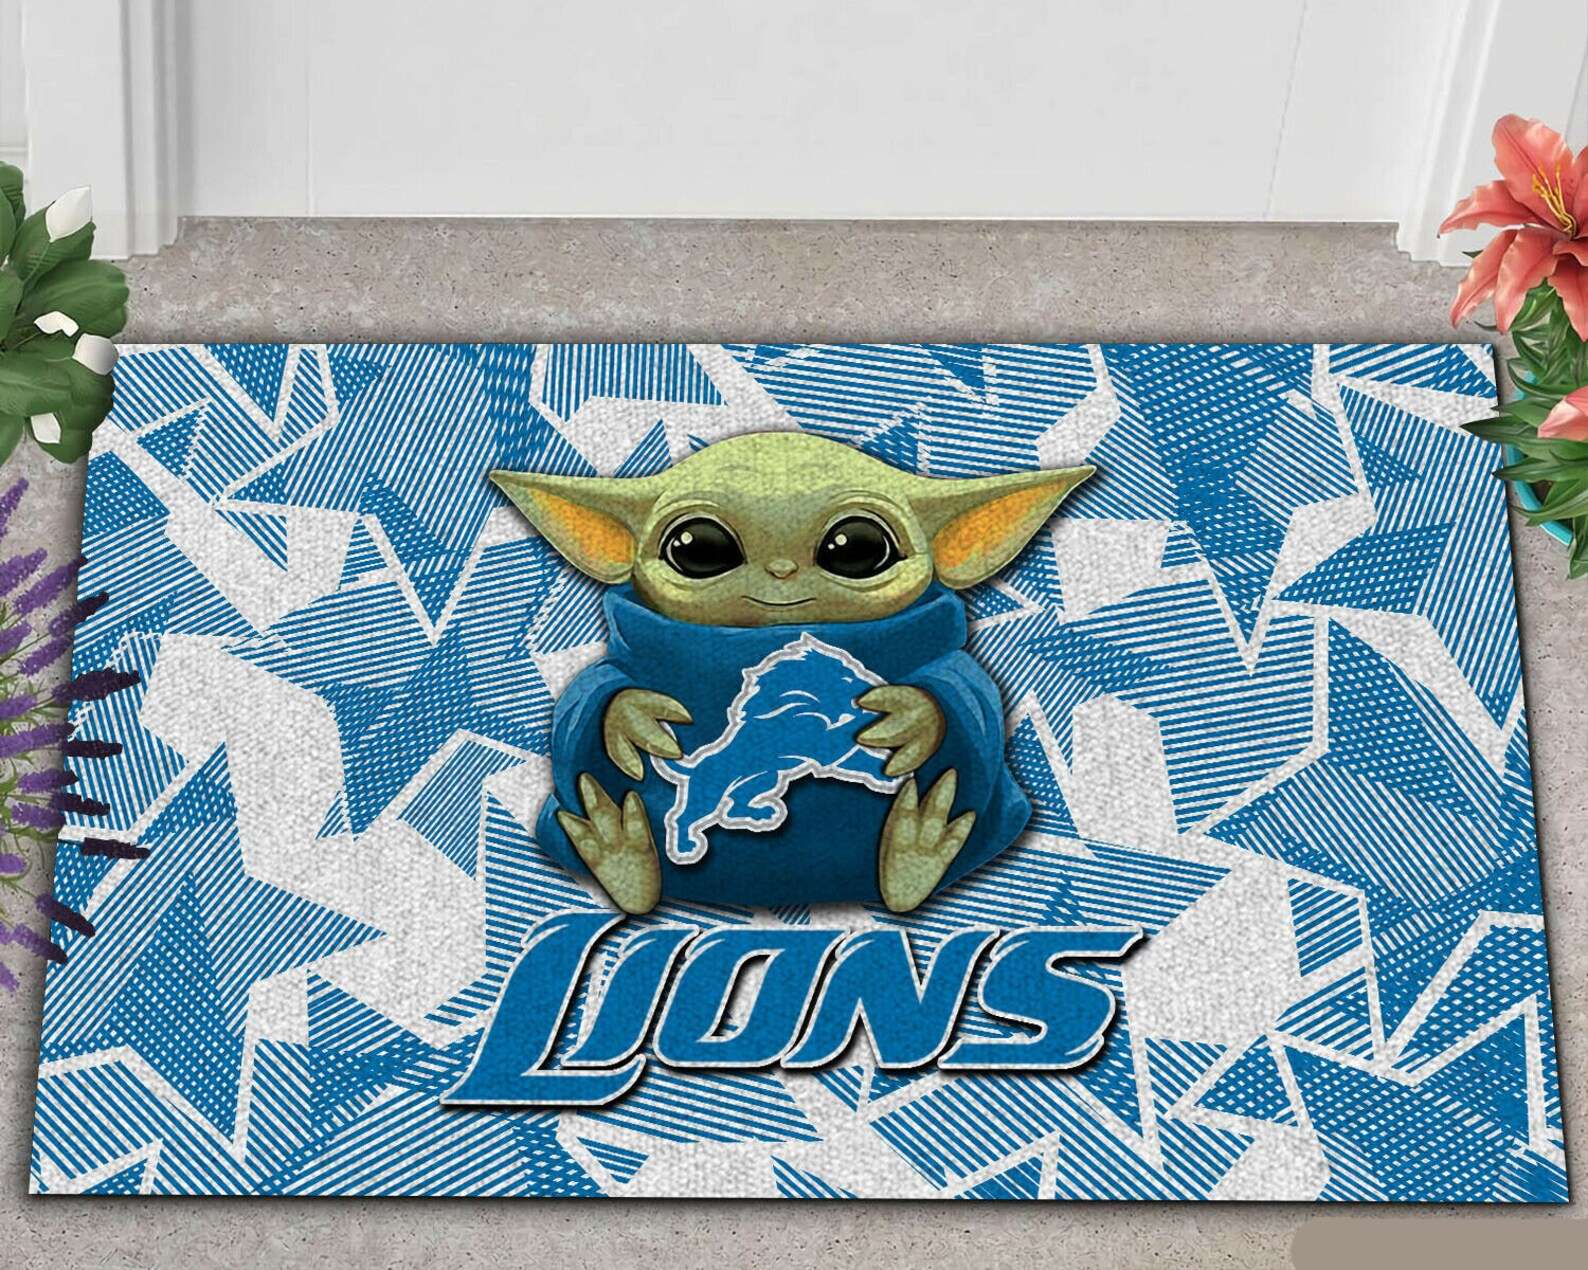 Star Wars Detroit Lions Nfl Doormat